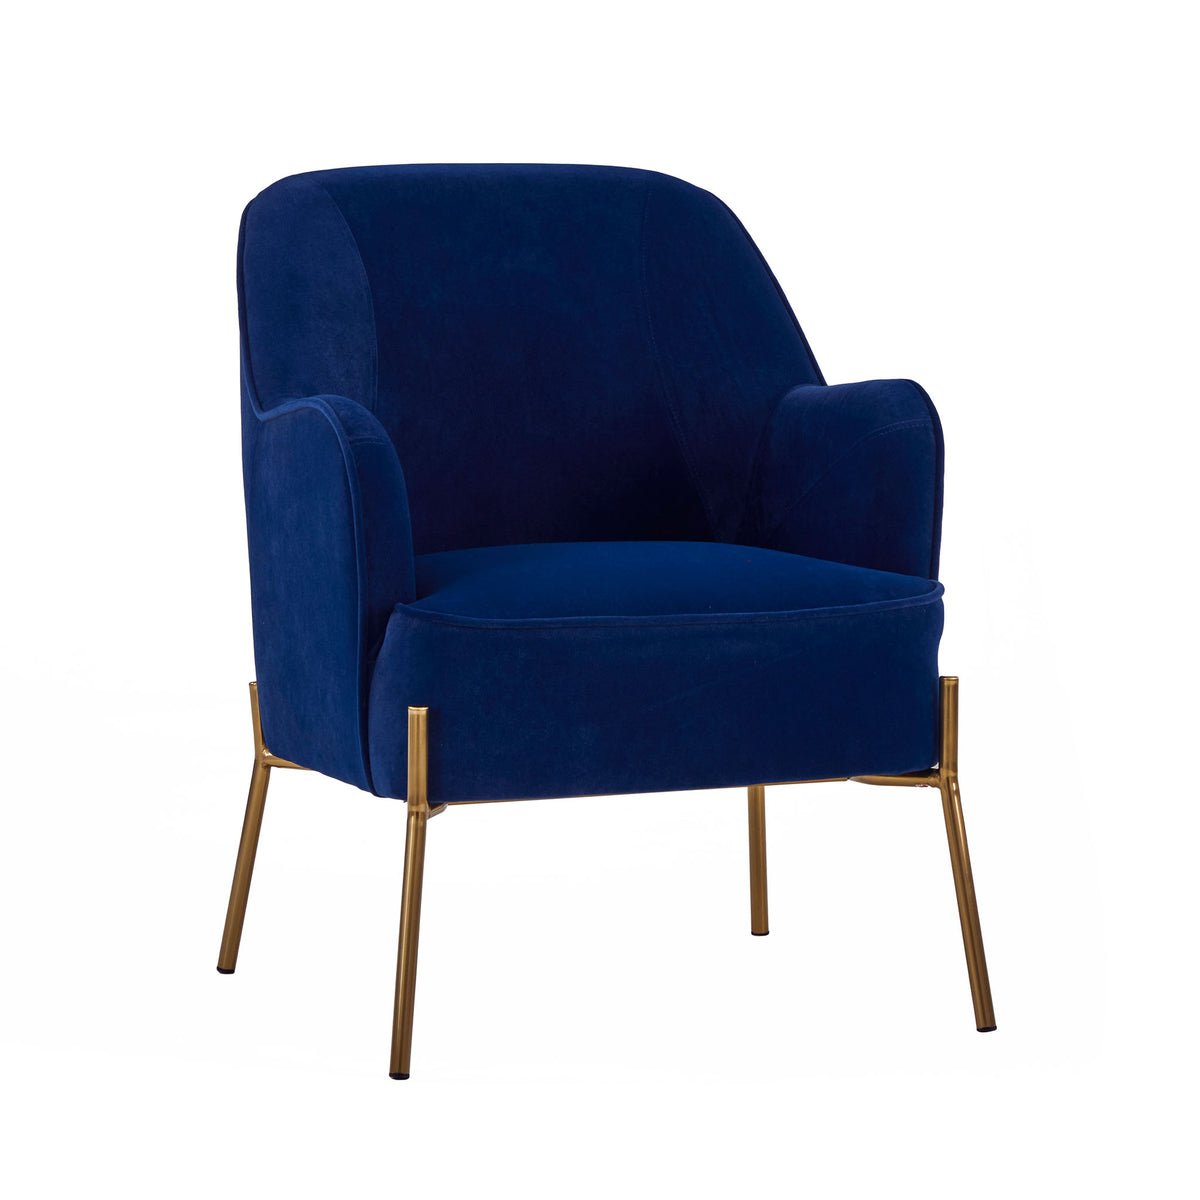 Delphine Navy Blue Velvet Glam Accent Chair from Roseland